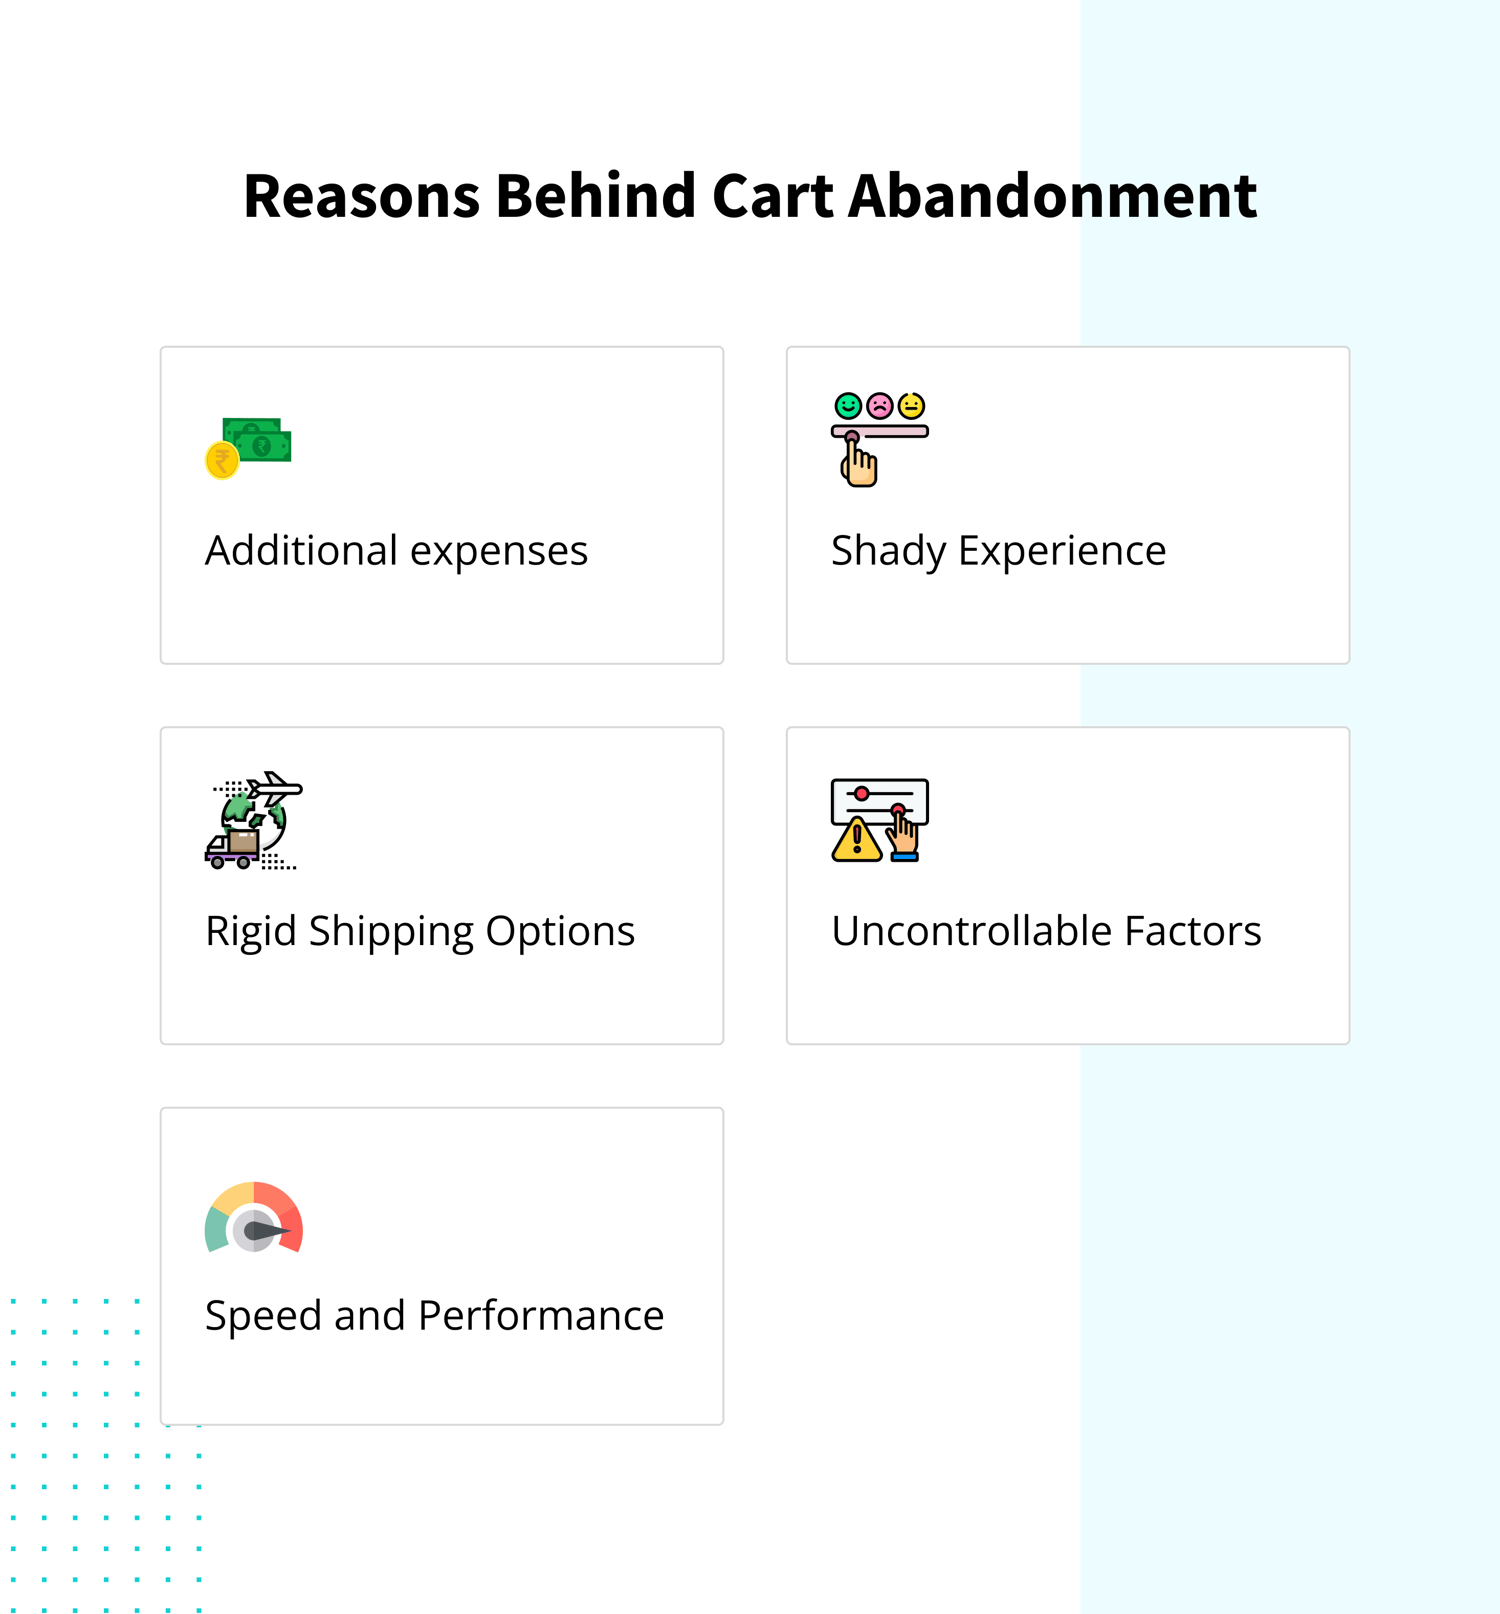  Reasons behind Cart Abandonment